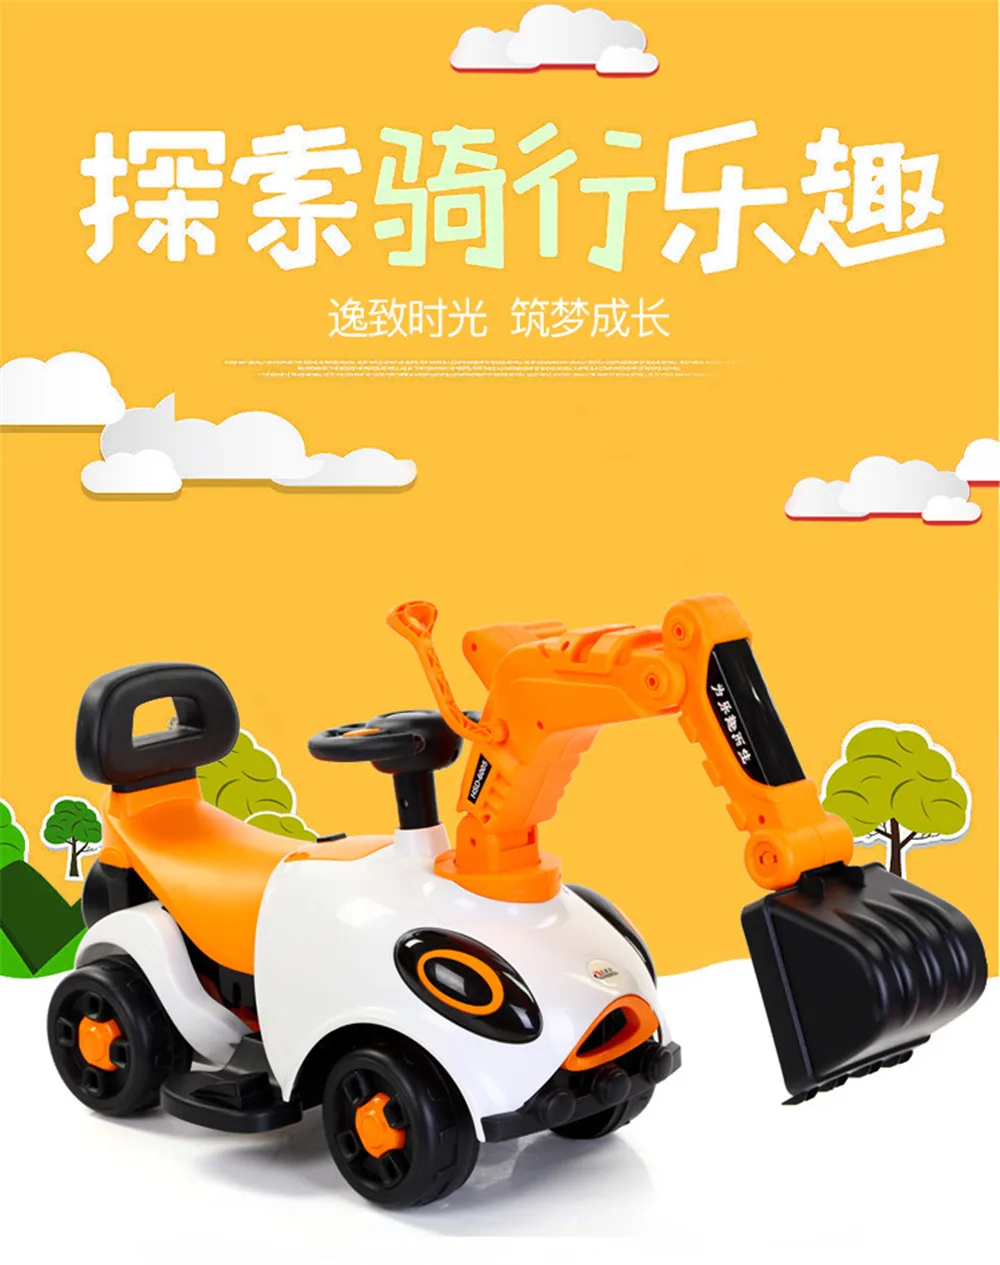 Детский экскаватор может сидеть и кататься большой электрический экскаватор крюк машина игрушечный автомобиль скользящая Инженерная машина